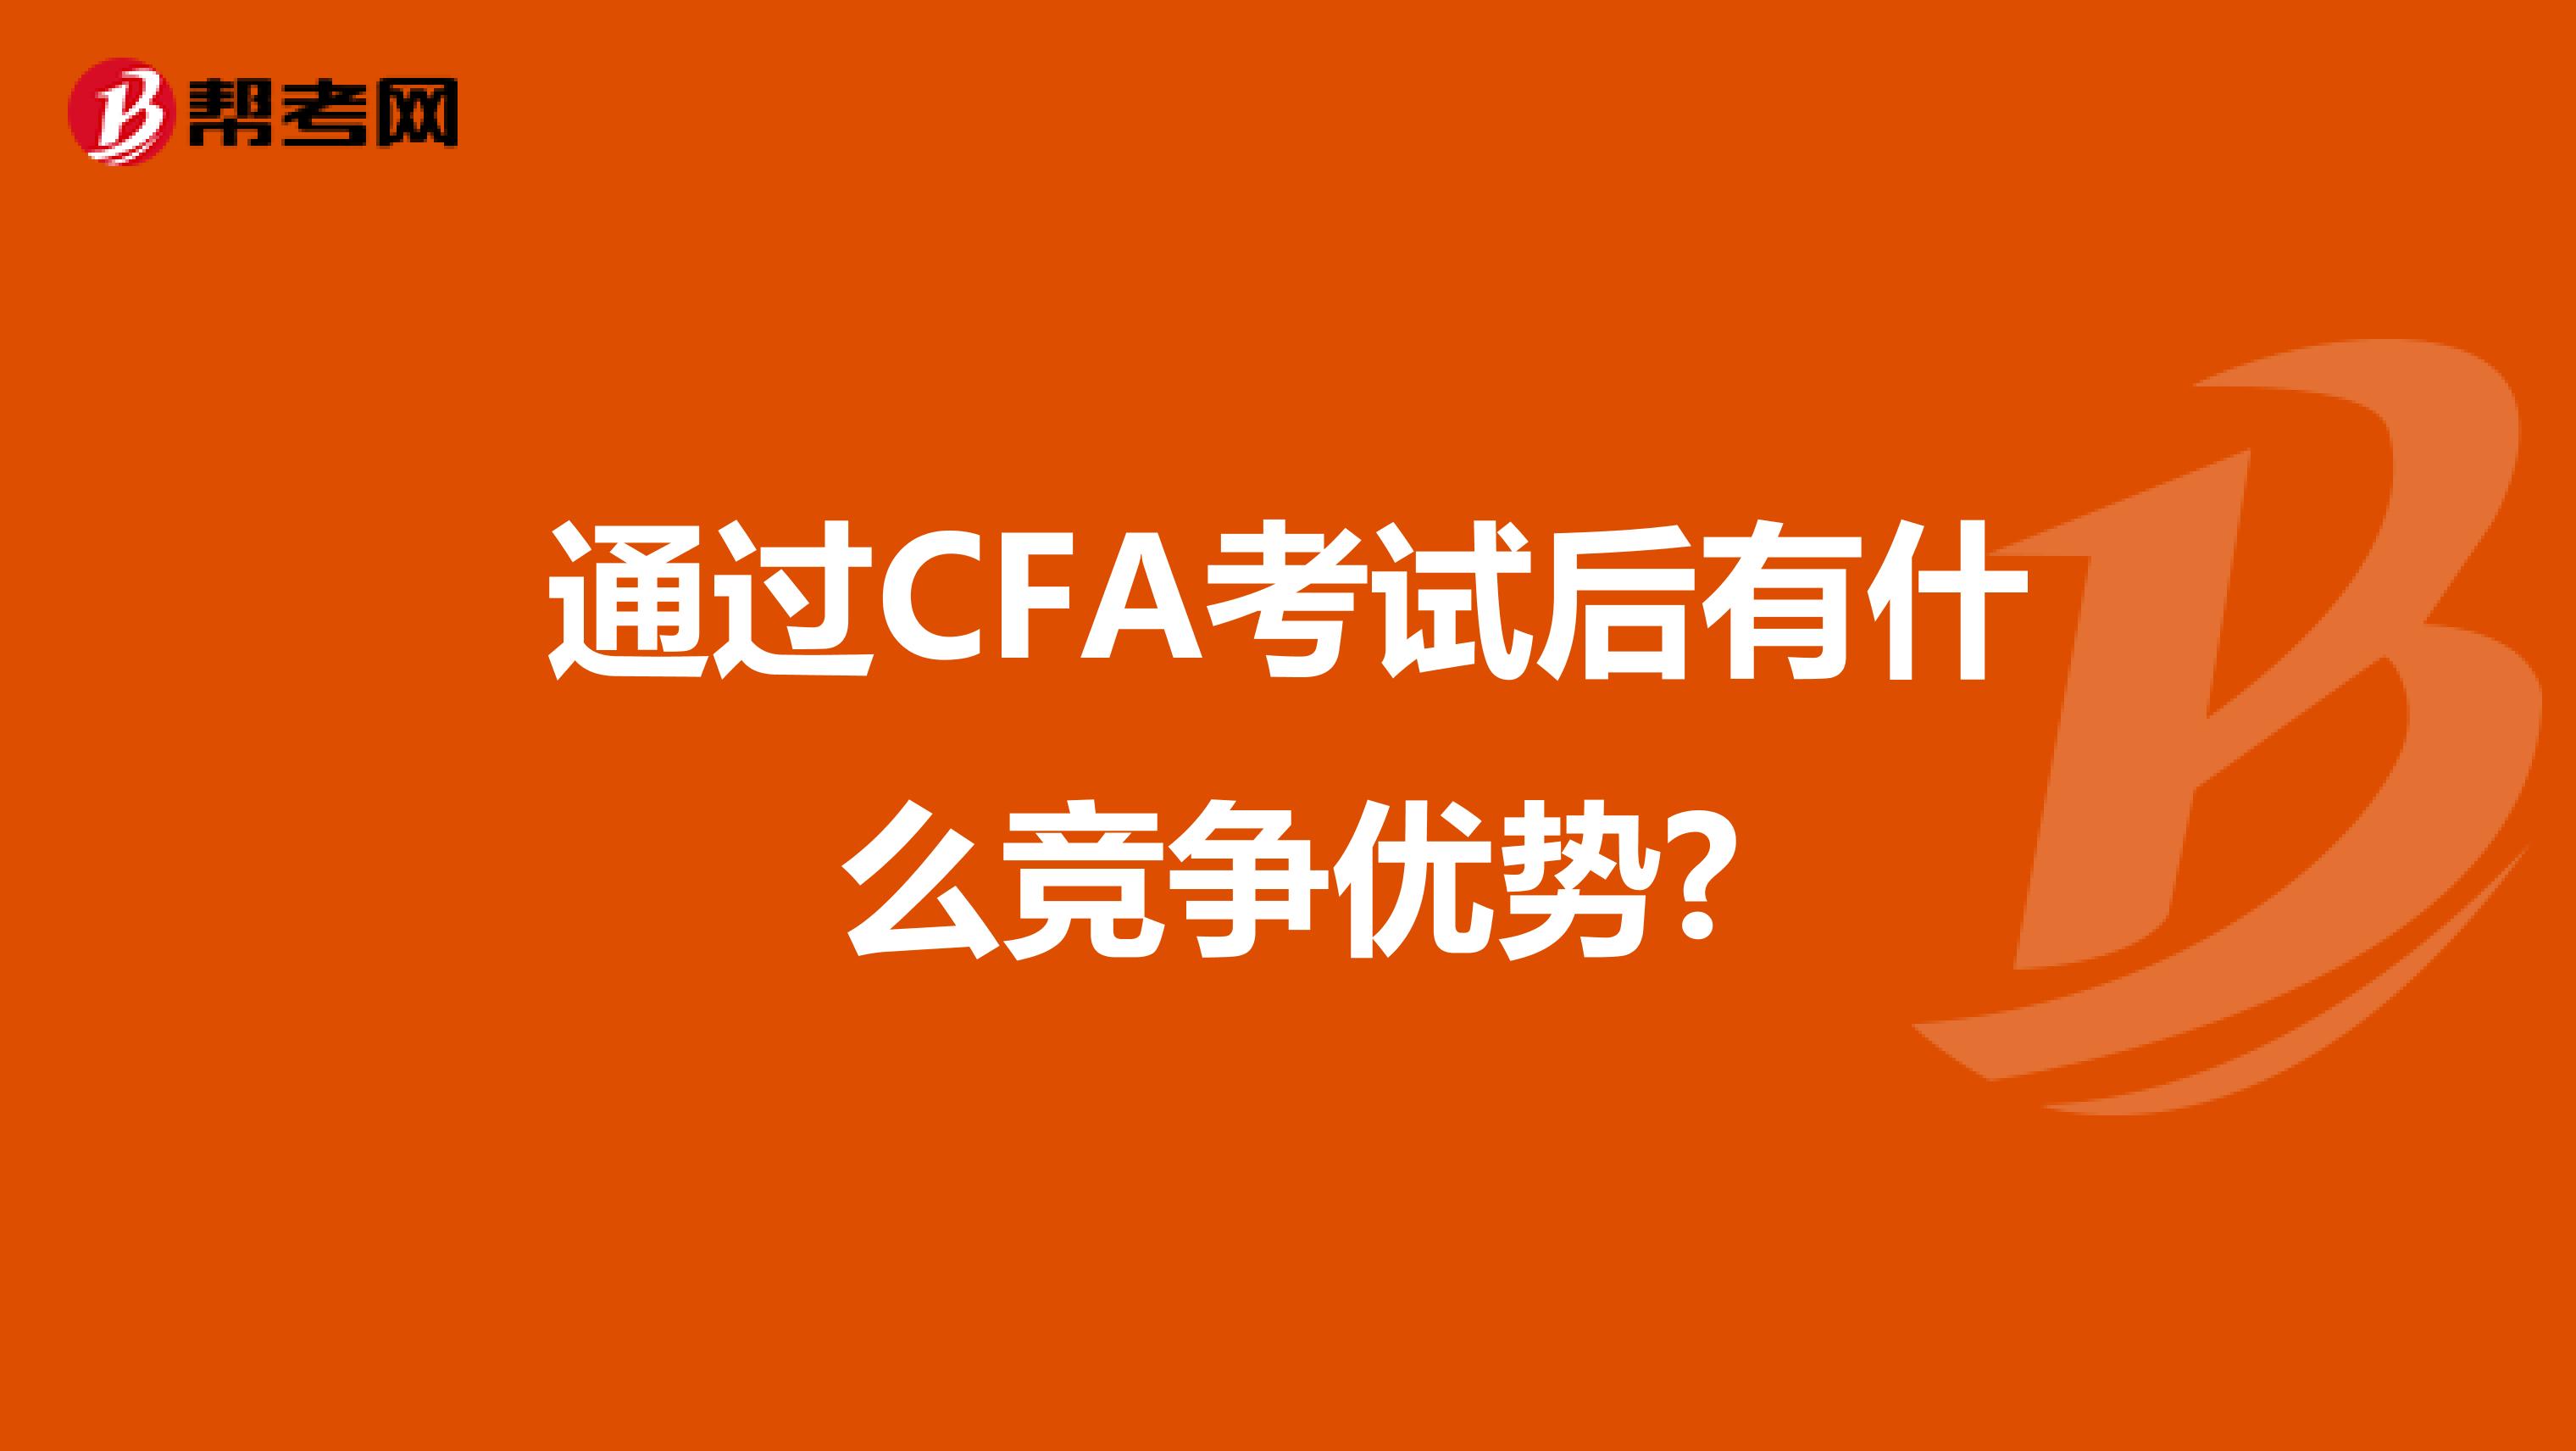 通过CFA考试后有什么竞争优势?